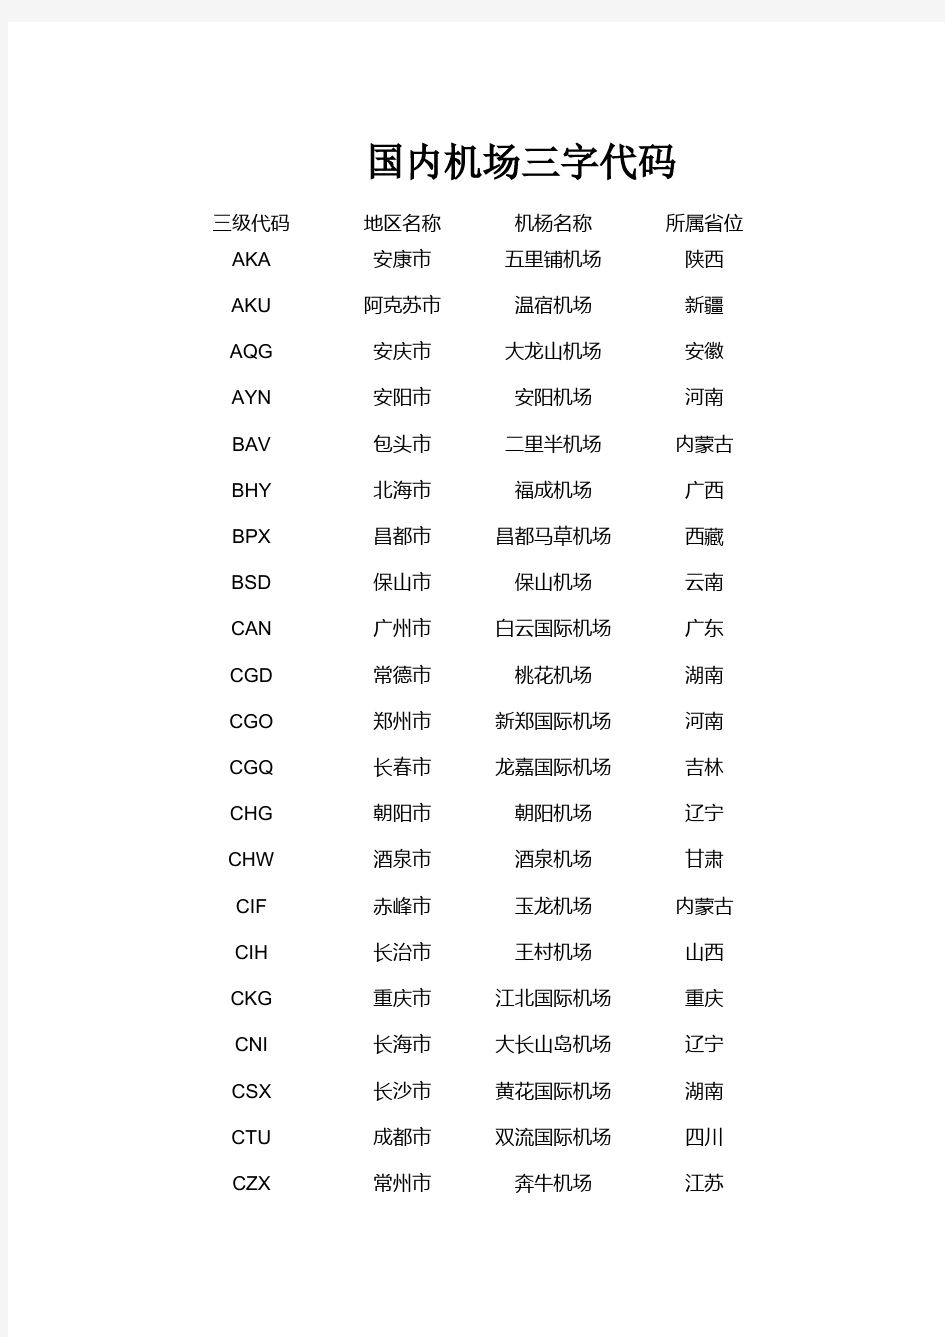 中国各城市机场三字代码